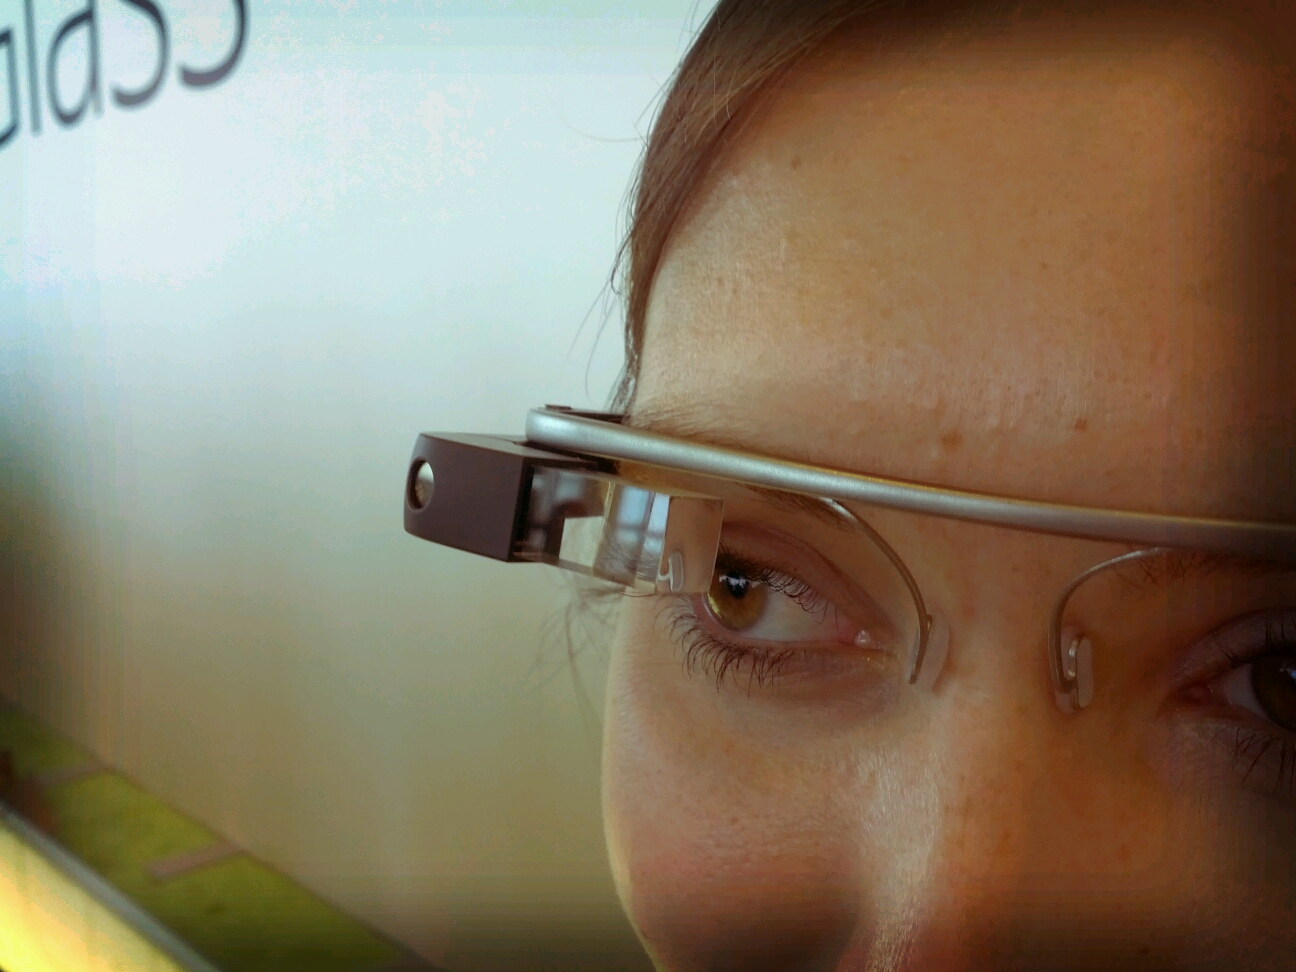 Auf dem Bild ist eine Frau mit einer Computer-Brille zu sehen.